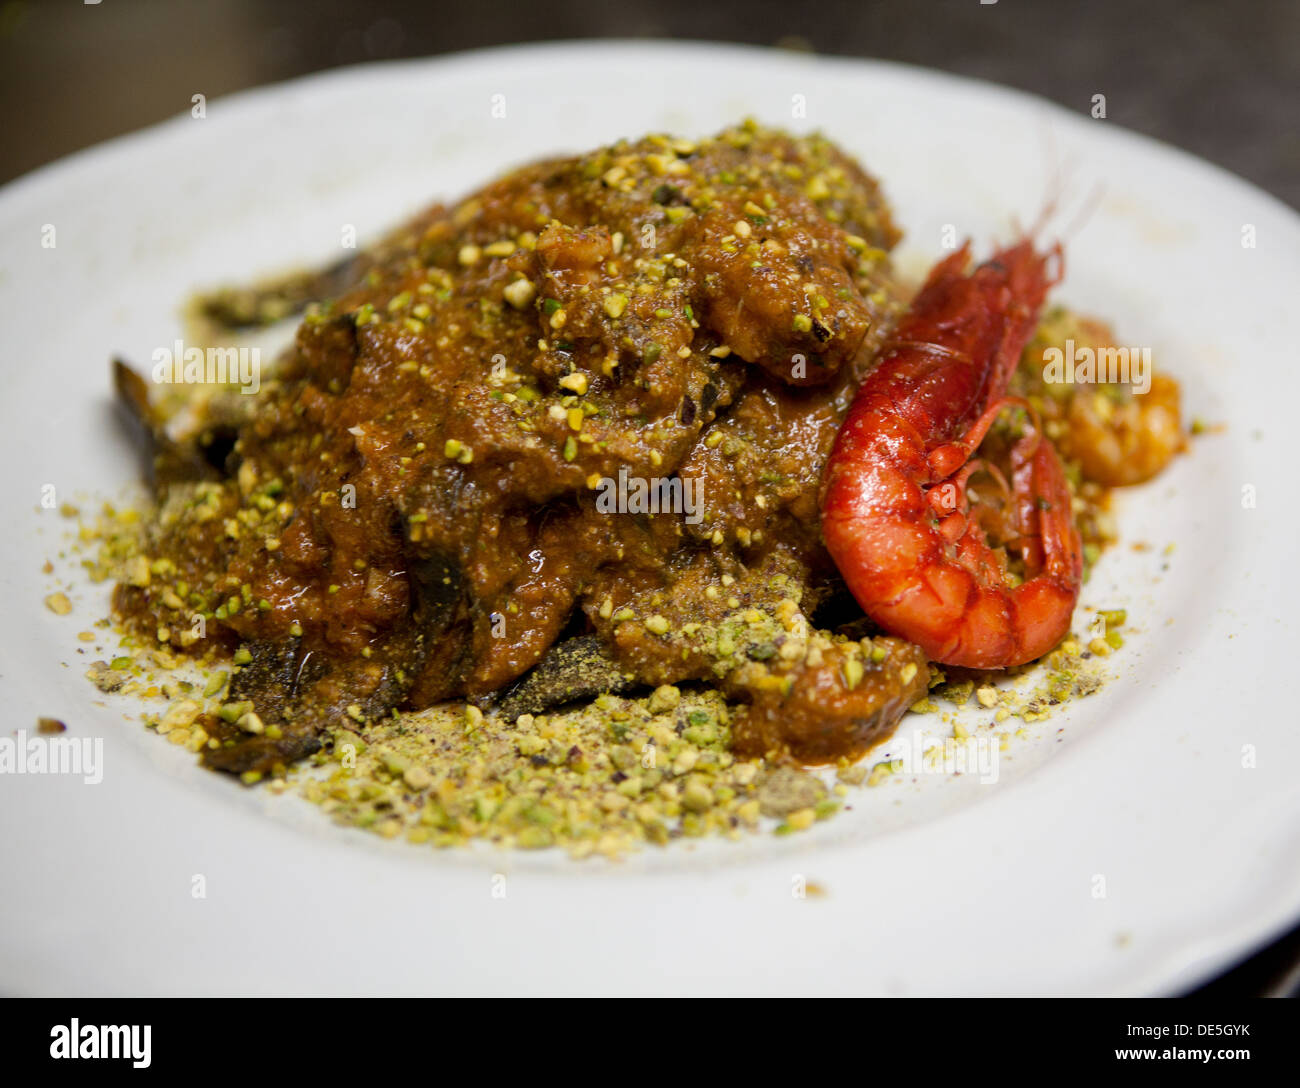 Un roi noir pâtes aux tomates, crevettes avec sauce Pistache servie sur une assiette blanche. Banque D'Images